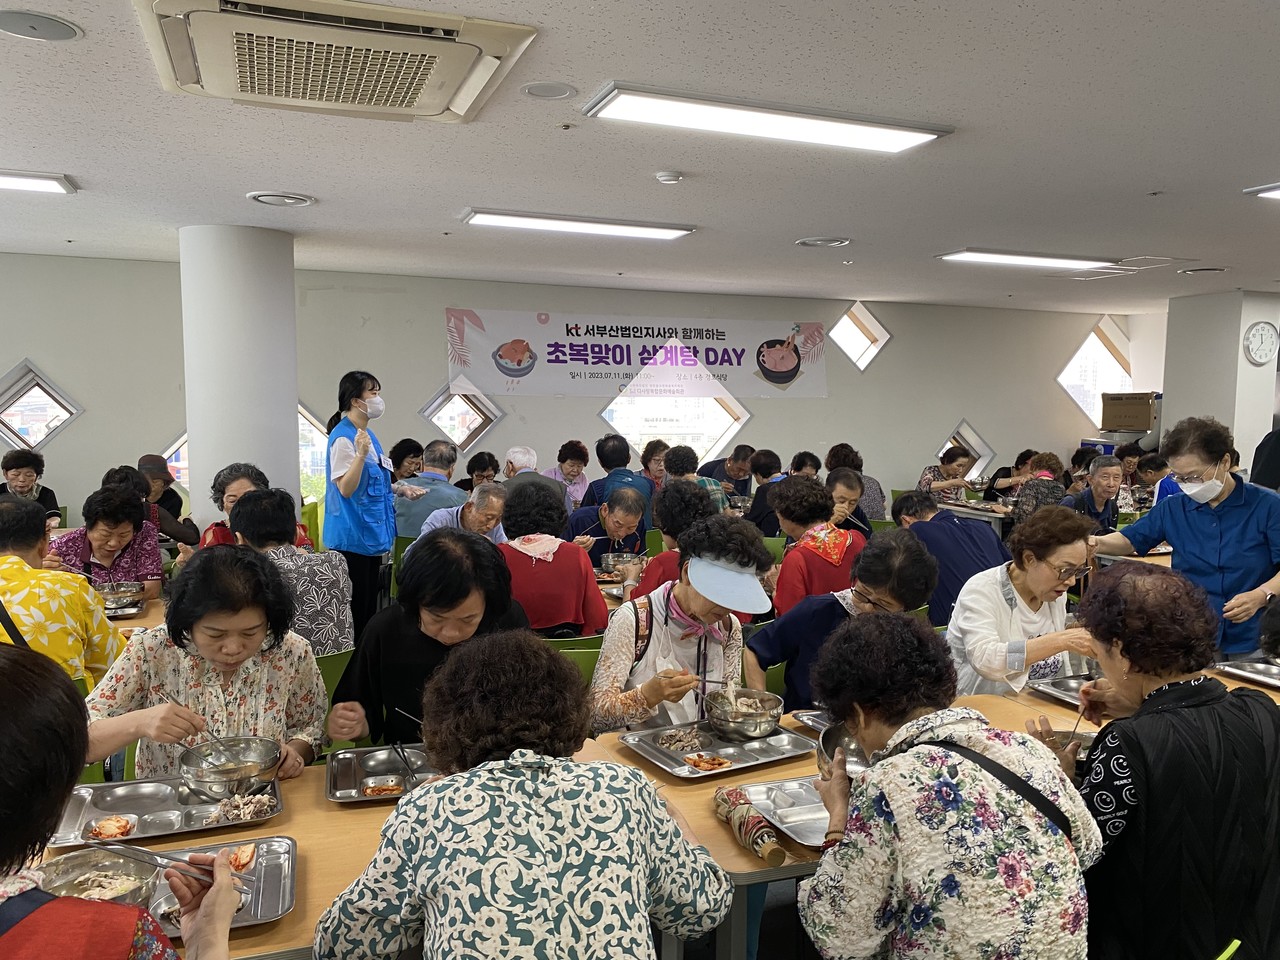 부산광역시다사랑복합문화예술회관이 초복을 맞아 지역 어르신들을 위한 보양식 DAY를 개최했다.